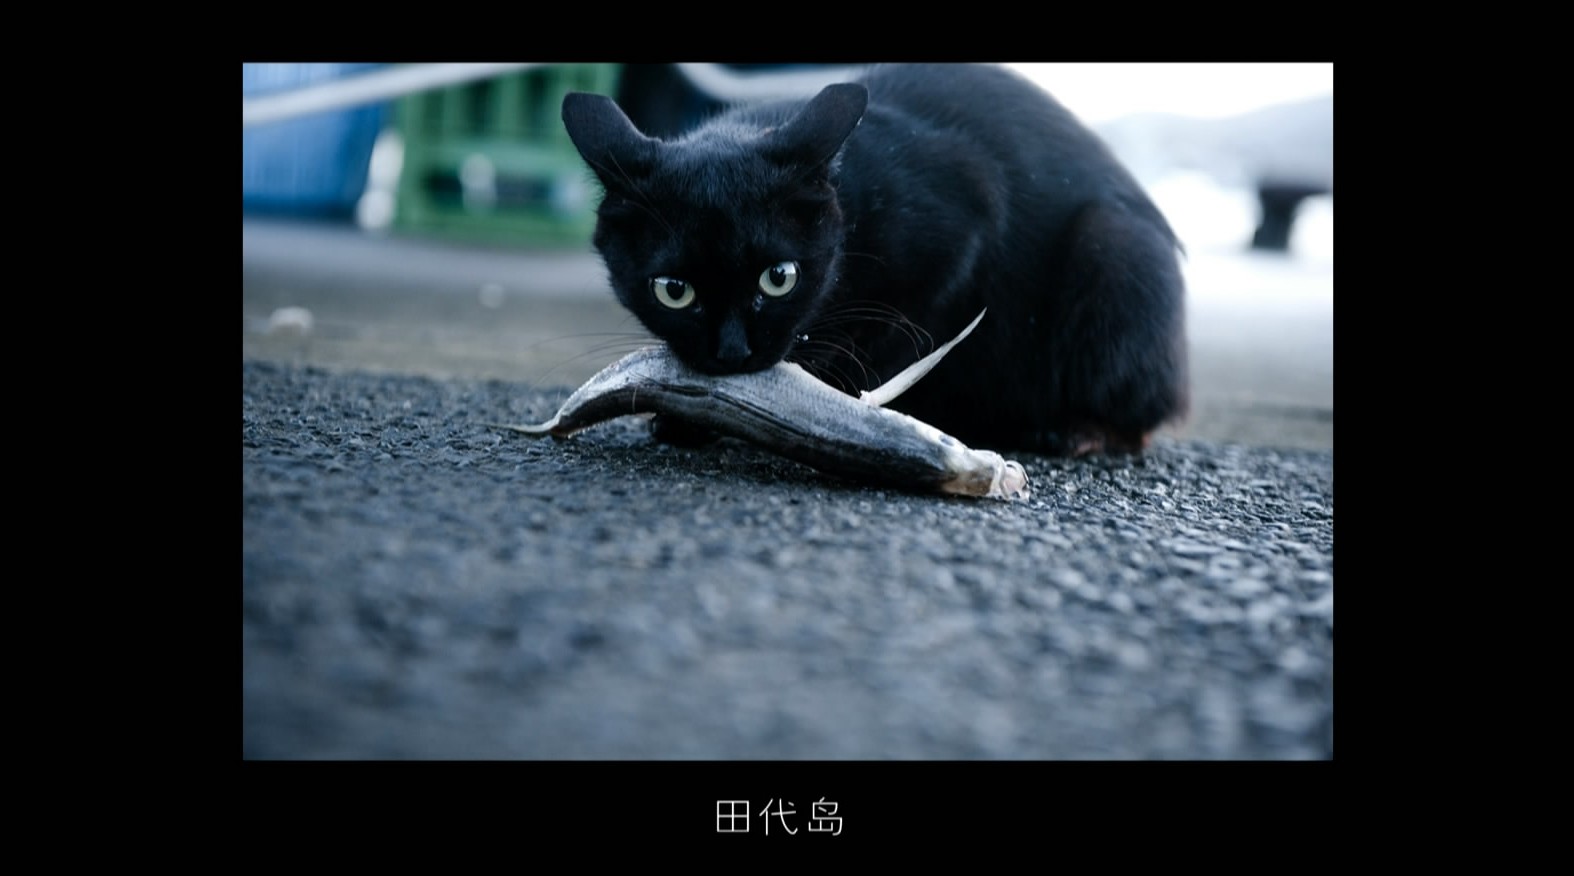 《共生主义》第三集《我、东京、猫》 